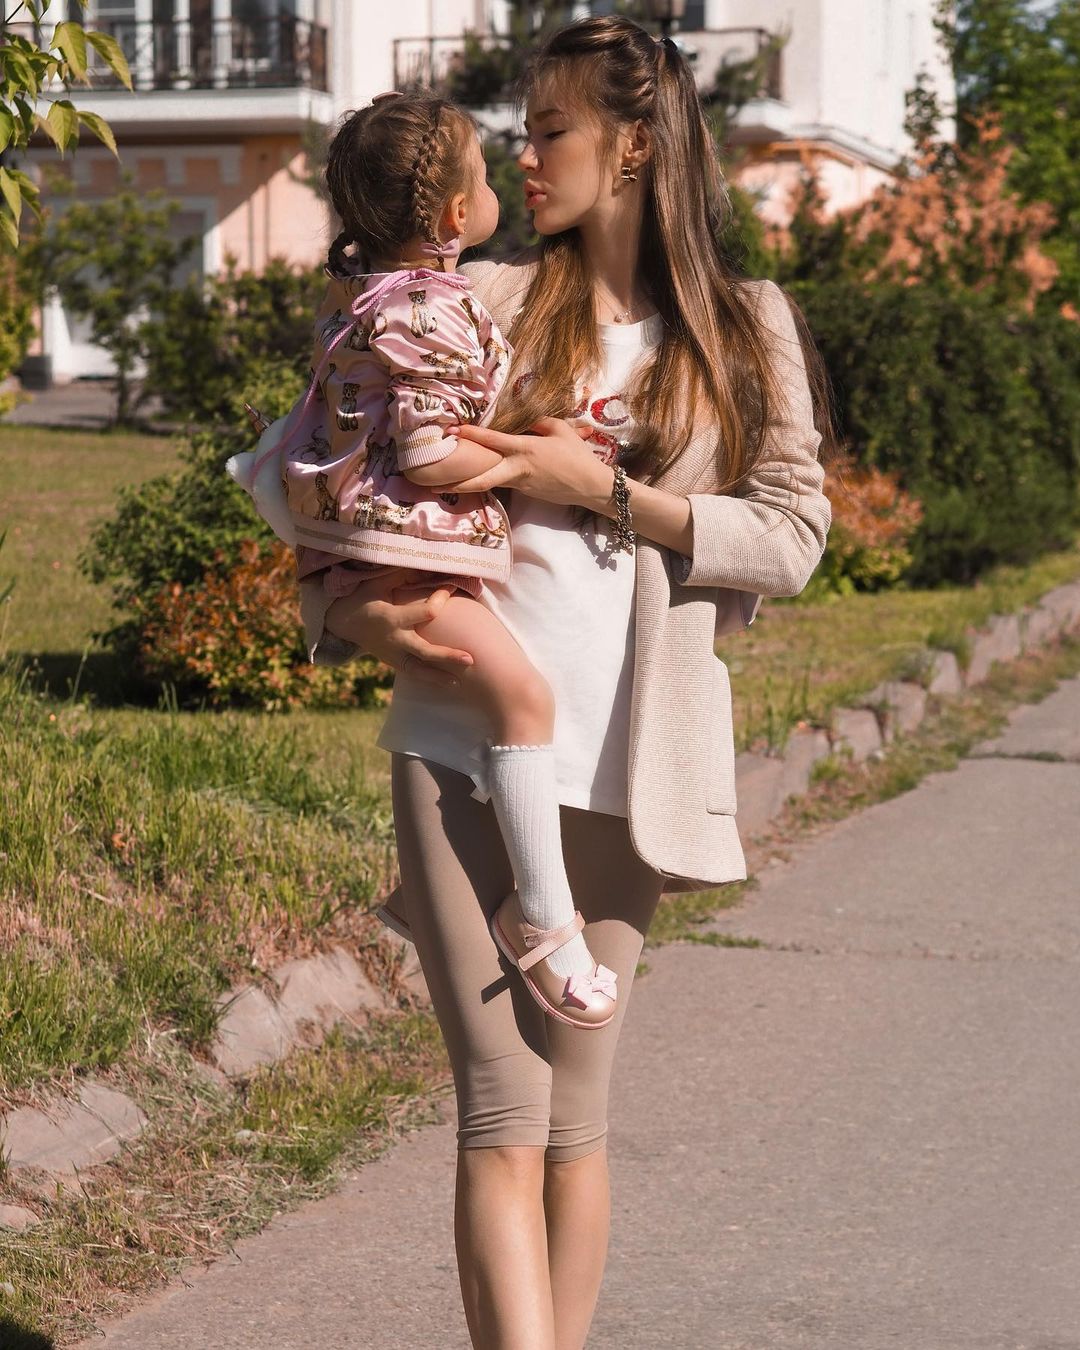 "Моё тело болит": Анастасия Костенко раскрыла менее радужную сторону третьей беременности